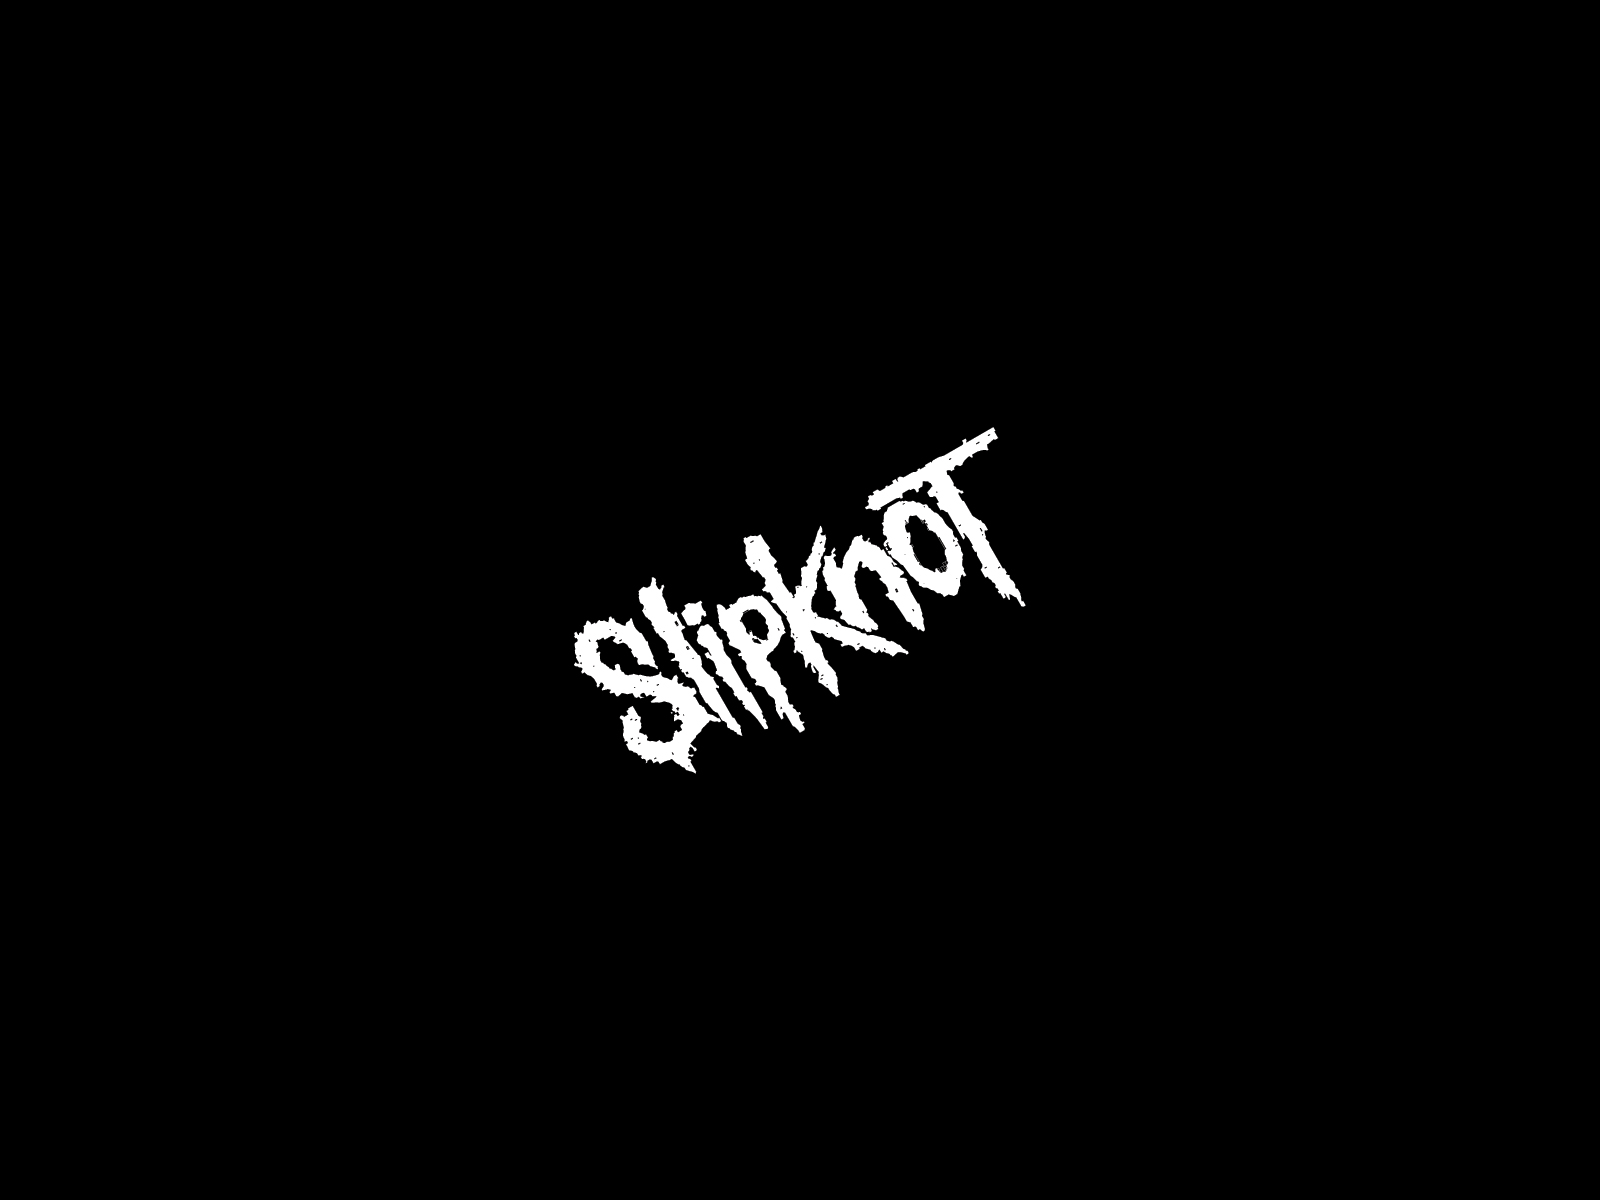 slipknot, industrial metal, nu metal, music, heavy metal wallpapers for tablet